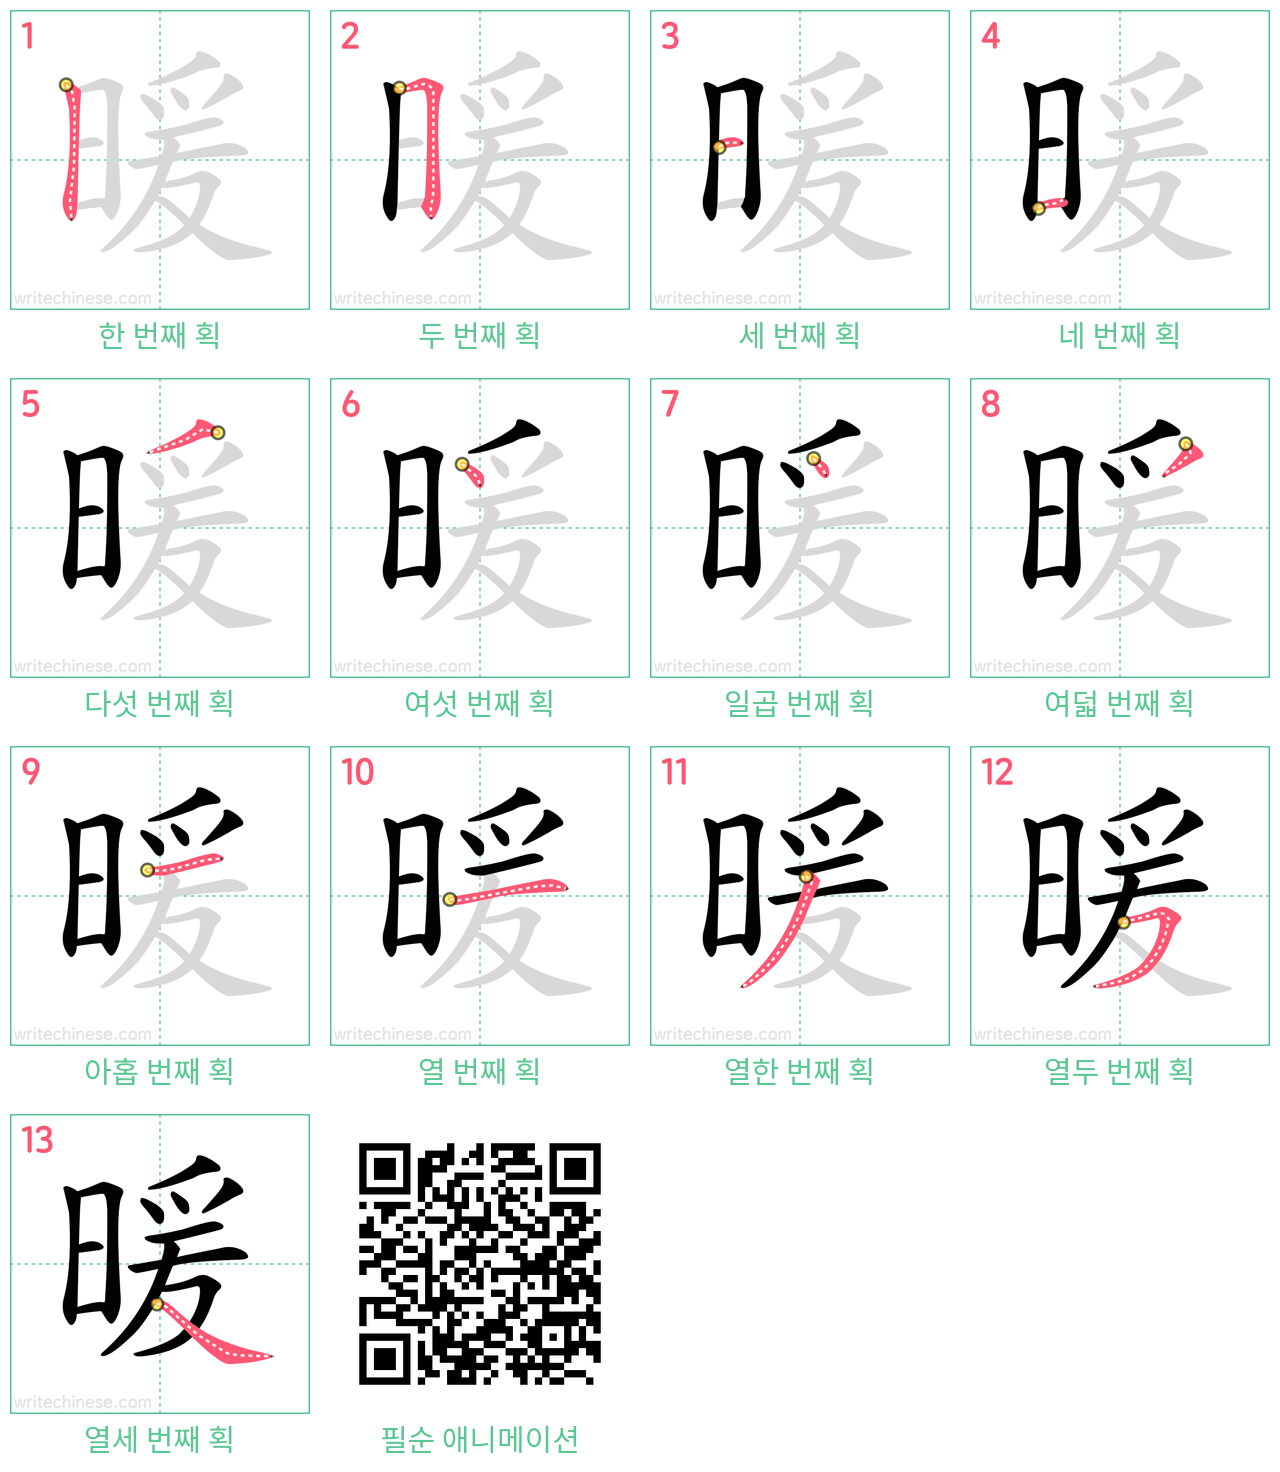 暖 step-by-step stroke order diagrams